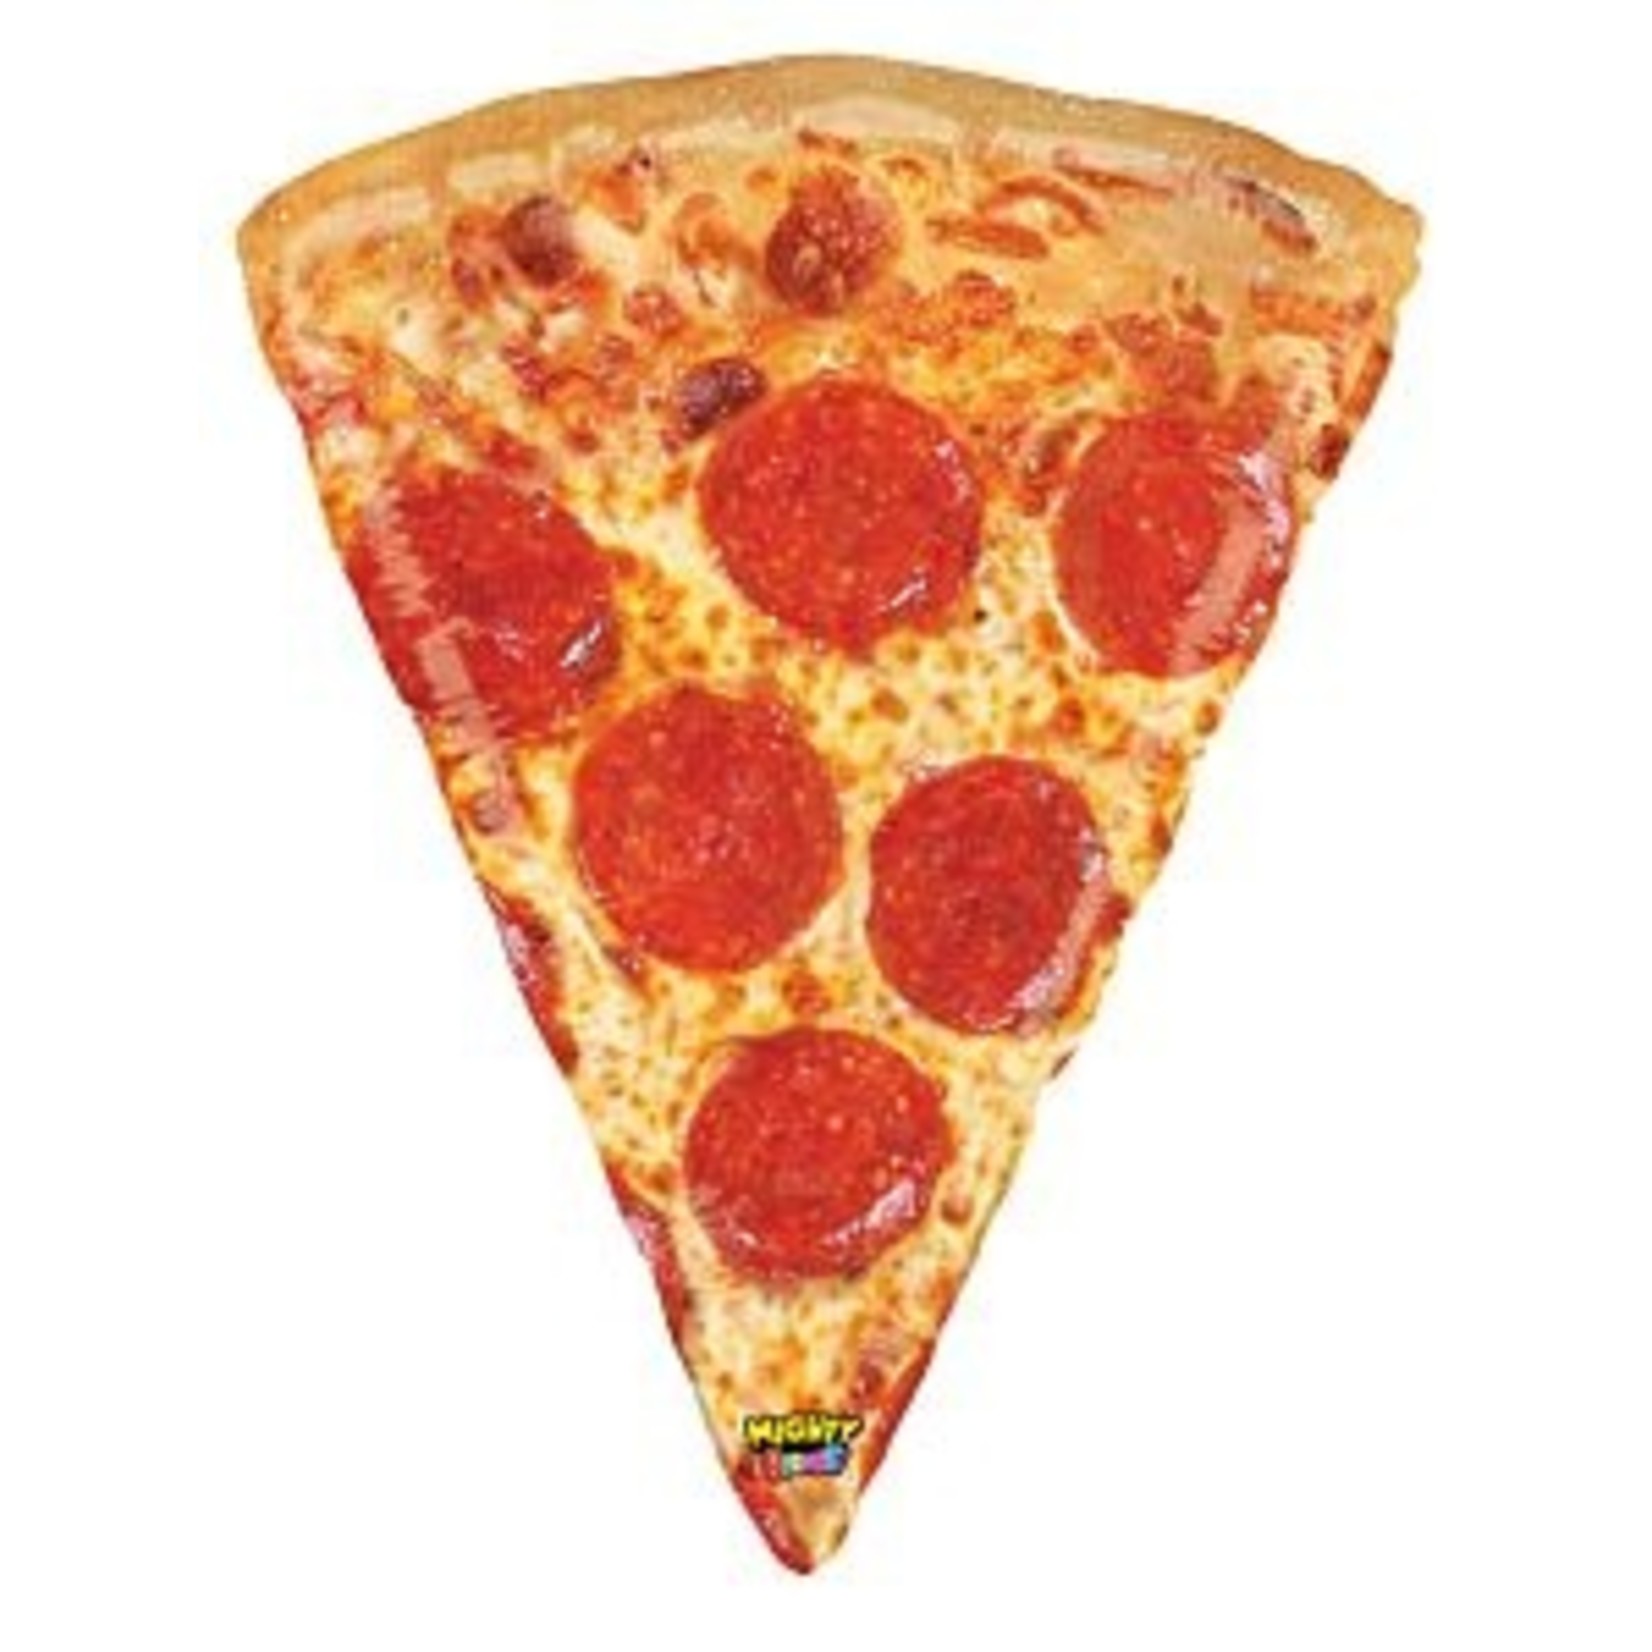 34" Mighty Pizza Shape